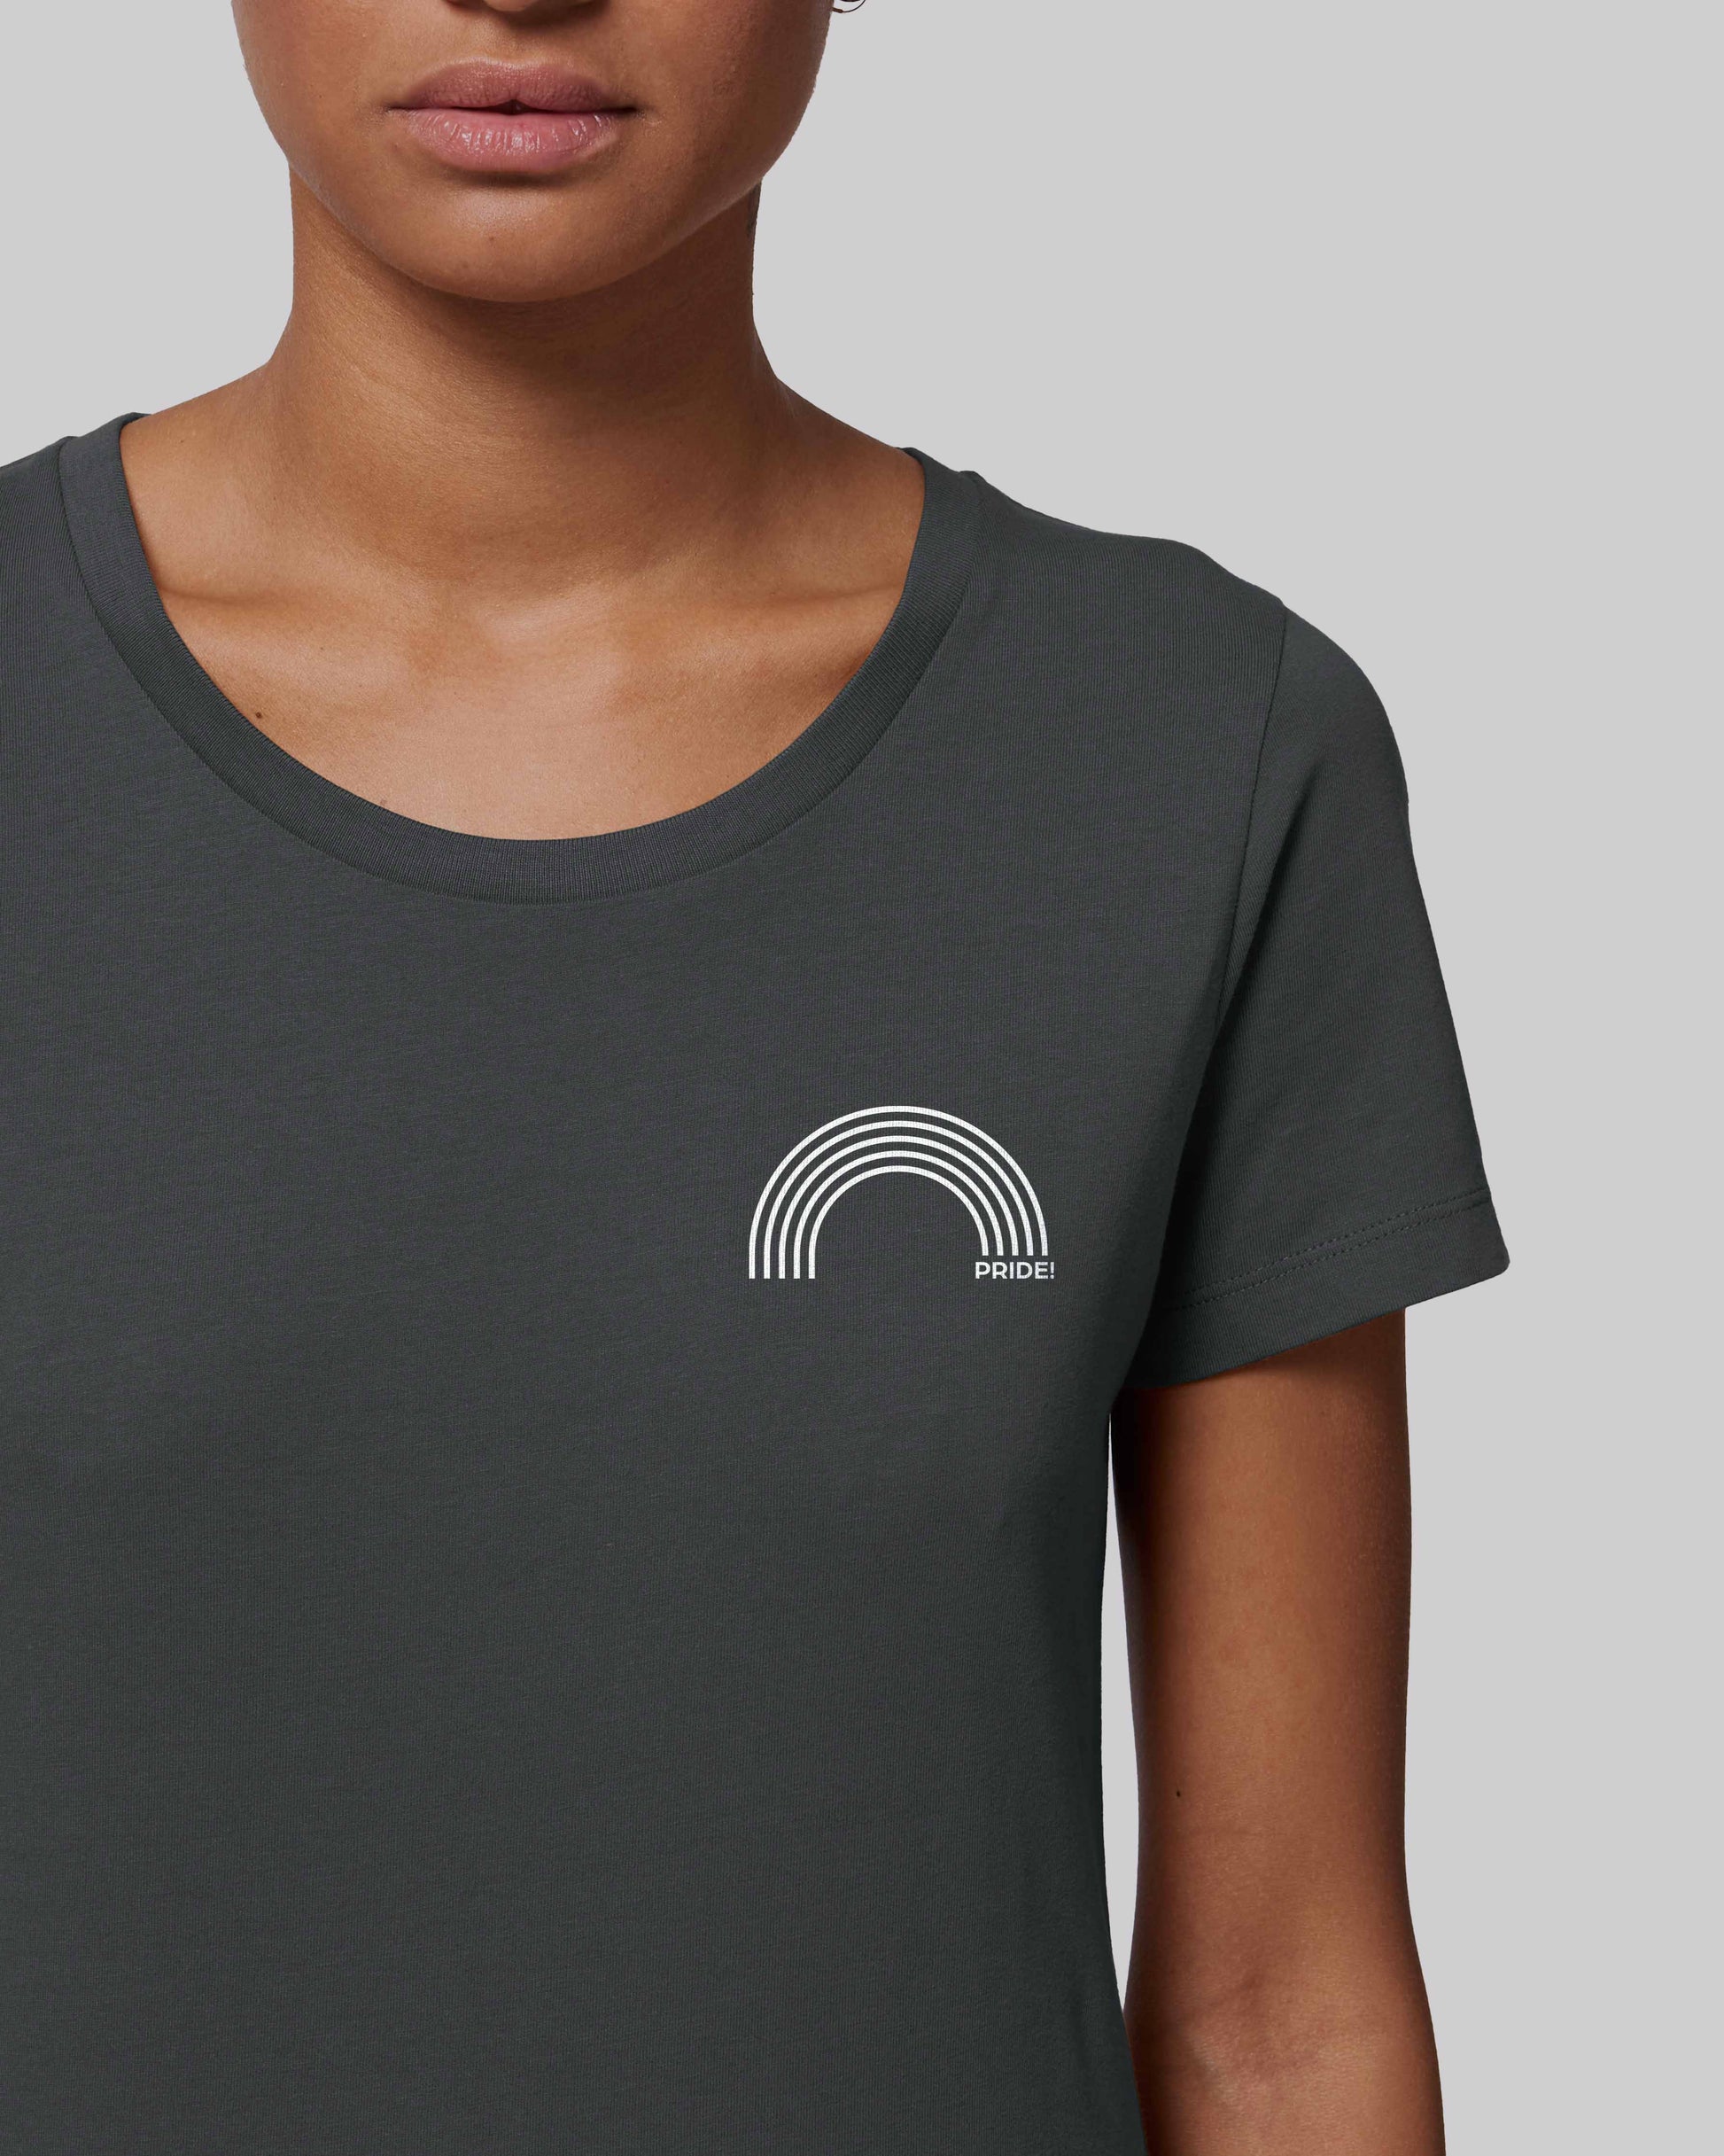 EINHORST® Organic Shirt tailliert in "Anthracite" mit dem Motiv "pride Regenbogen" in der Kombination weißer Regenbogen mit weißer Schrift, Bild von weiblicher Person mit Shirt